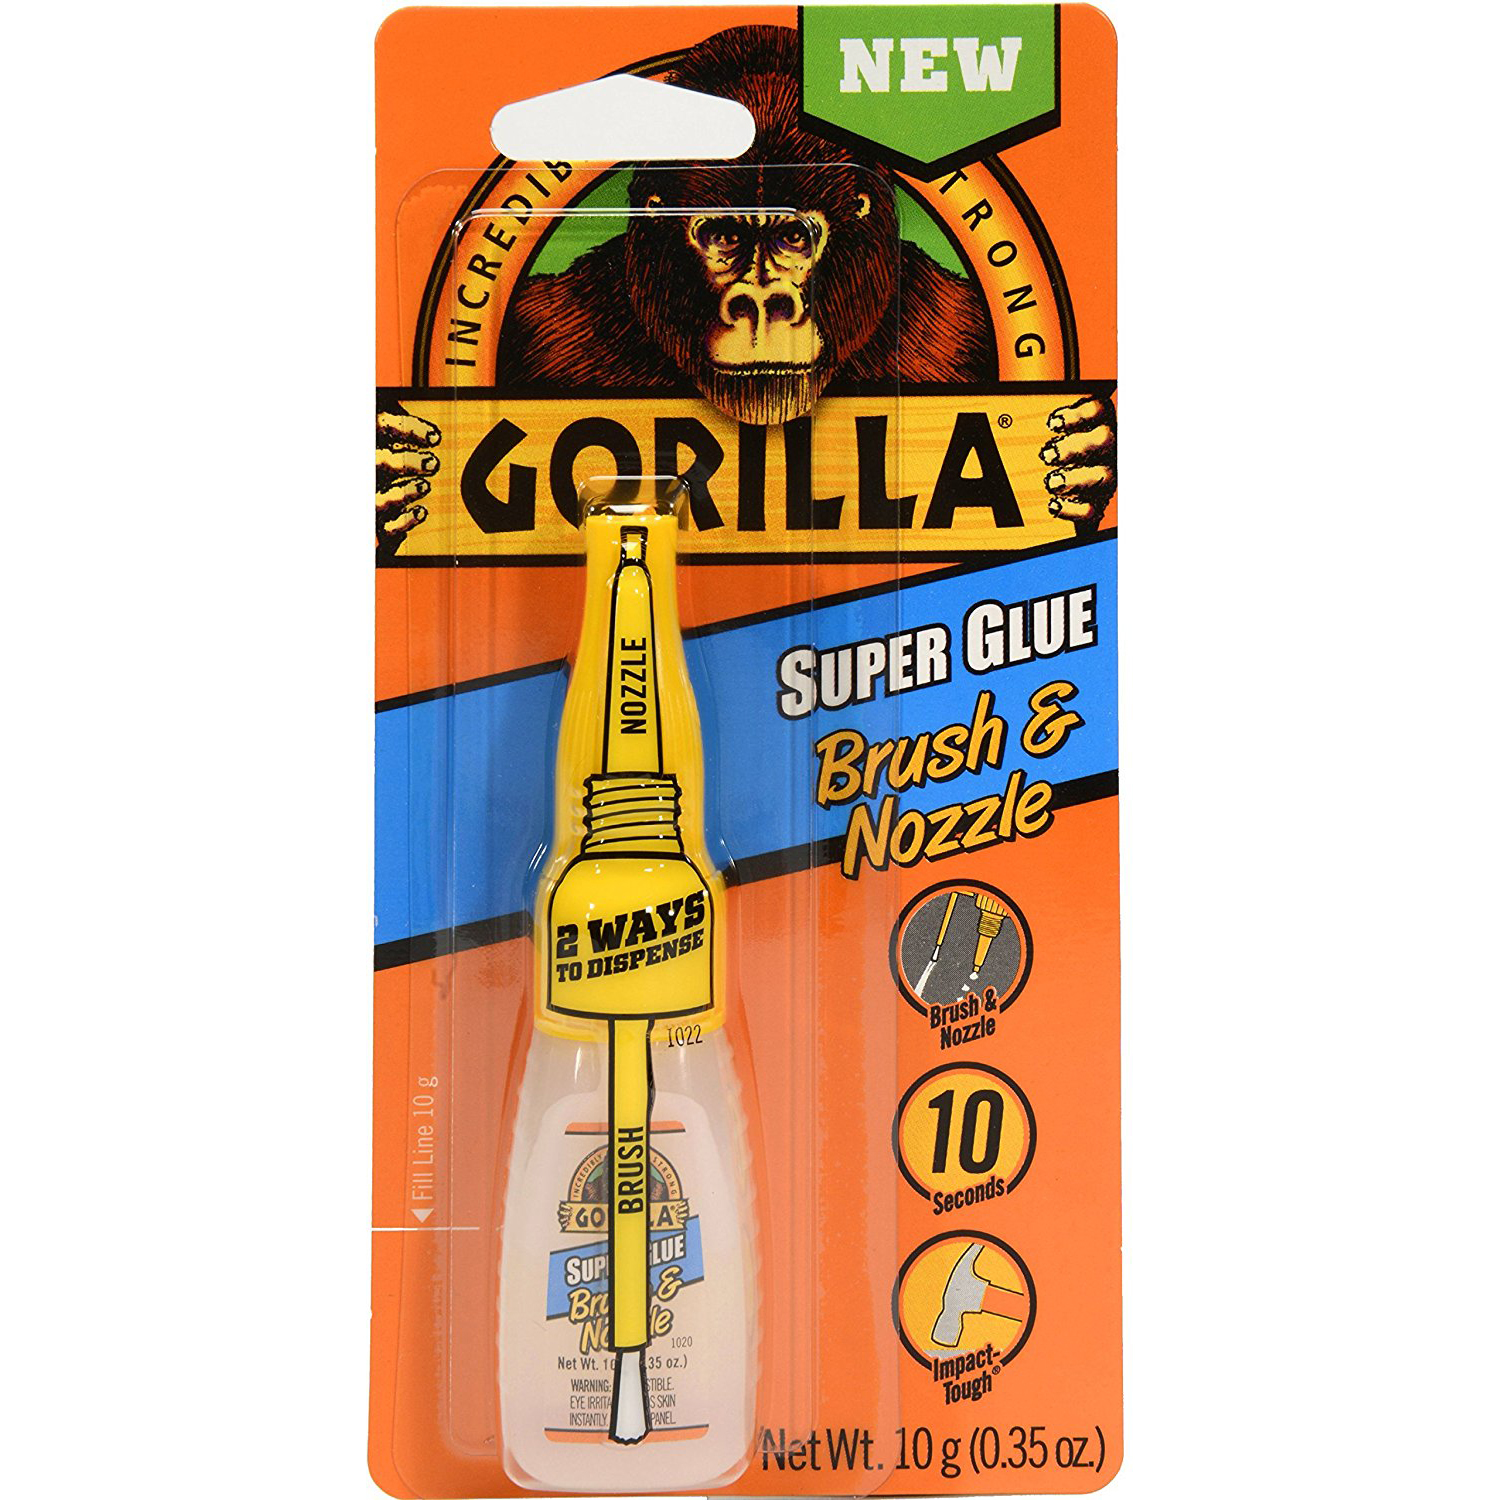 Gorilla 7500101 Super Glue Brush &amp; Nozzle